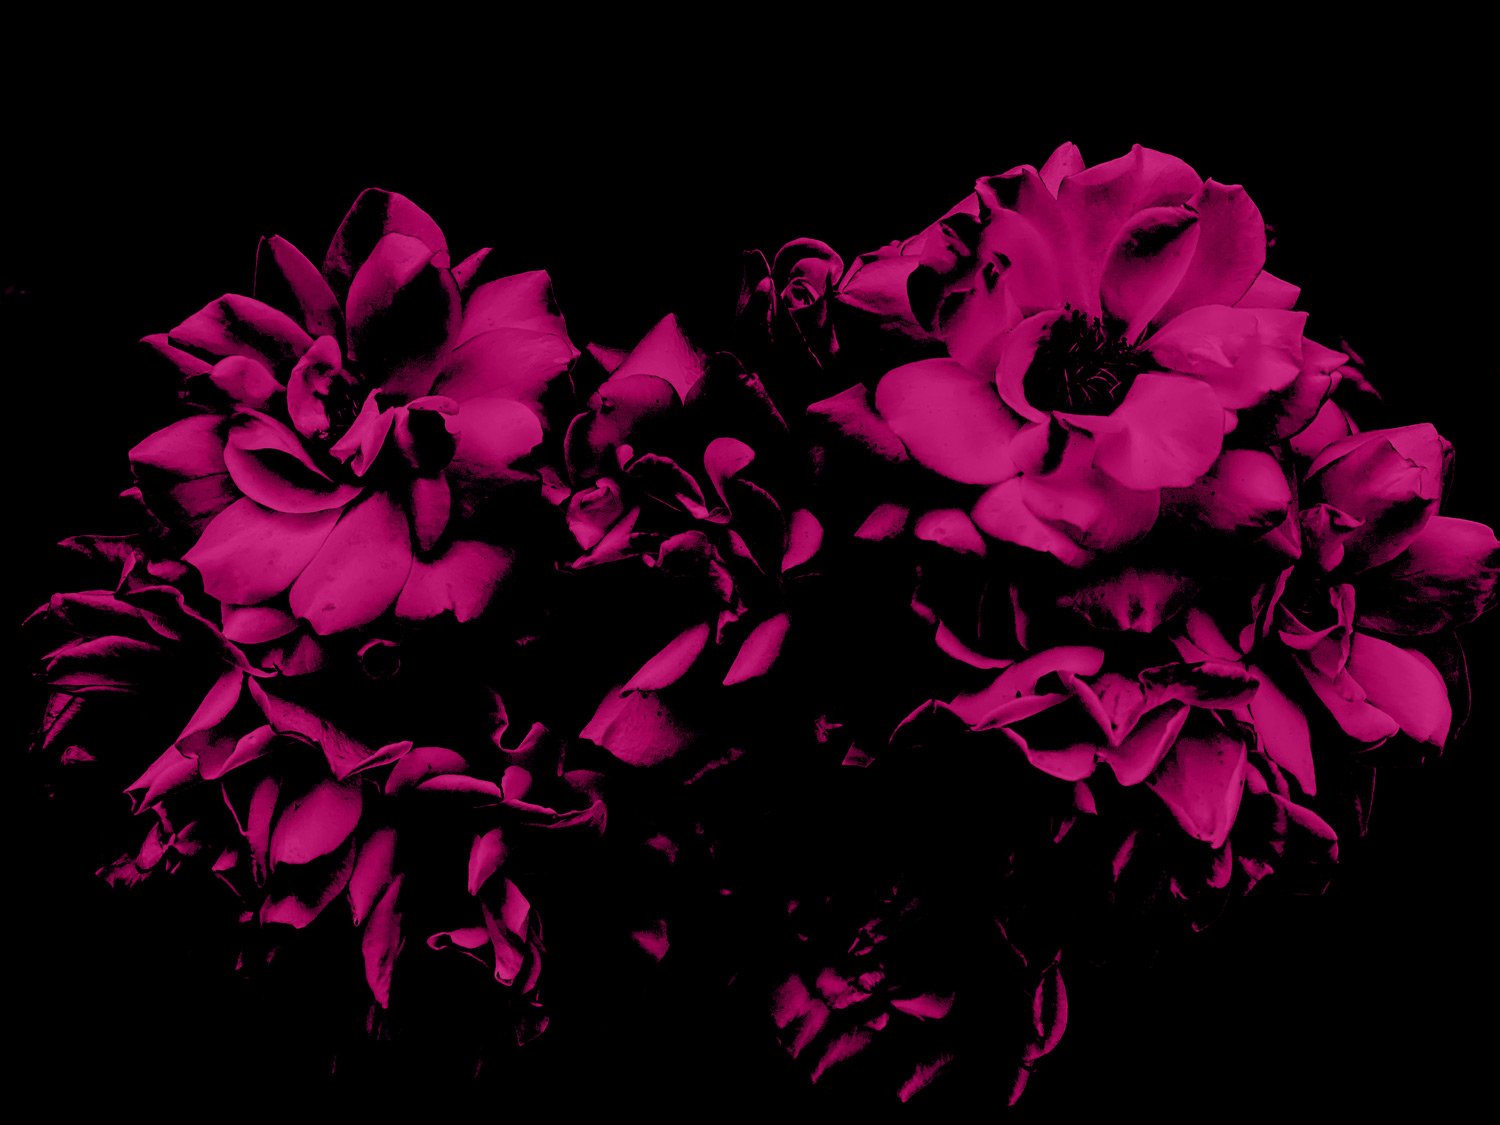 Roses2.jpg